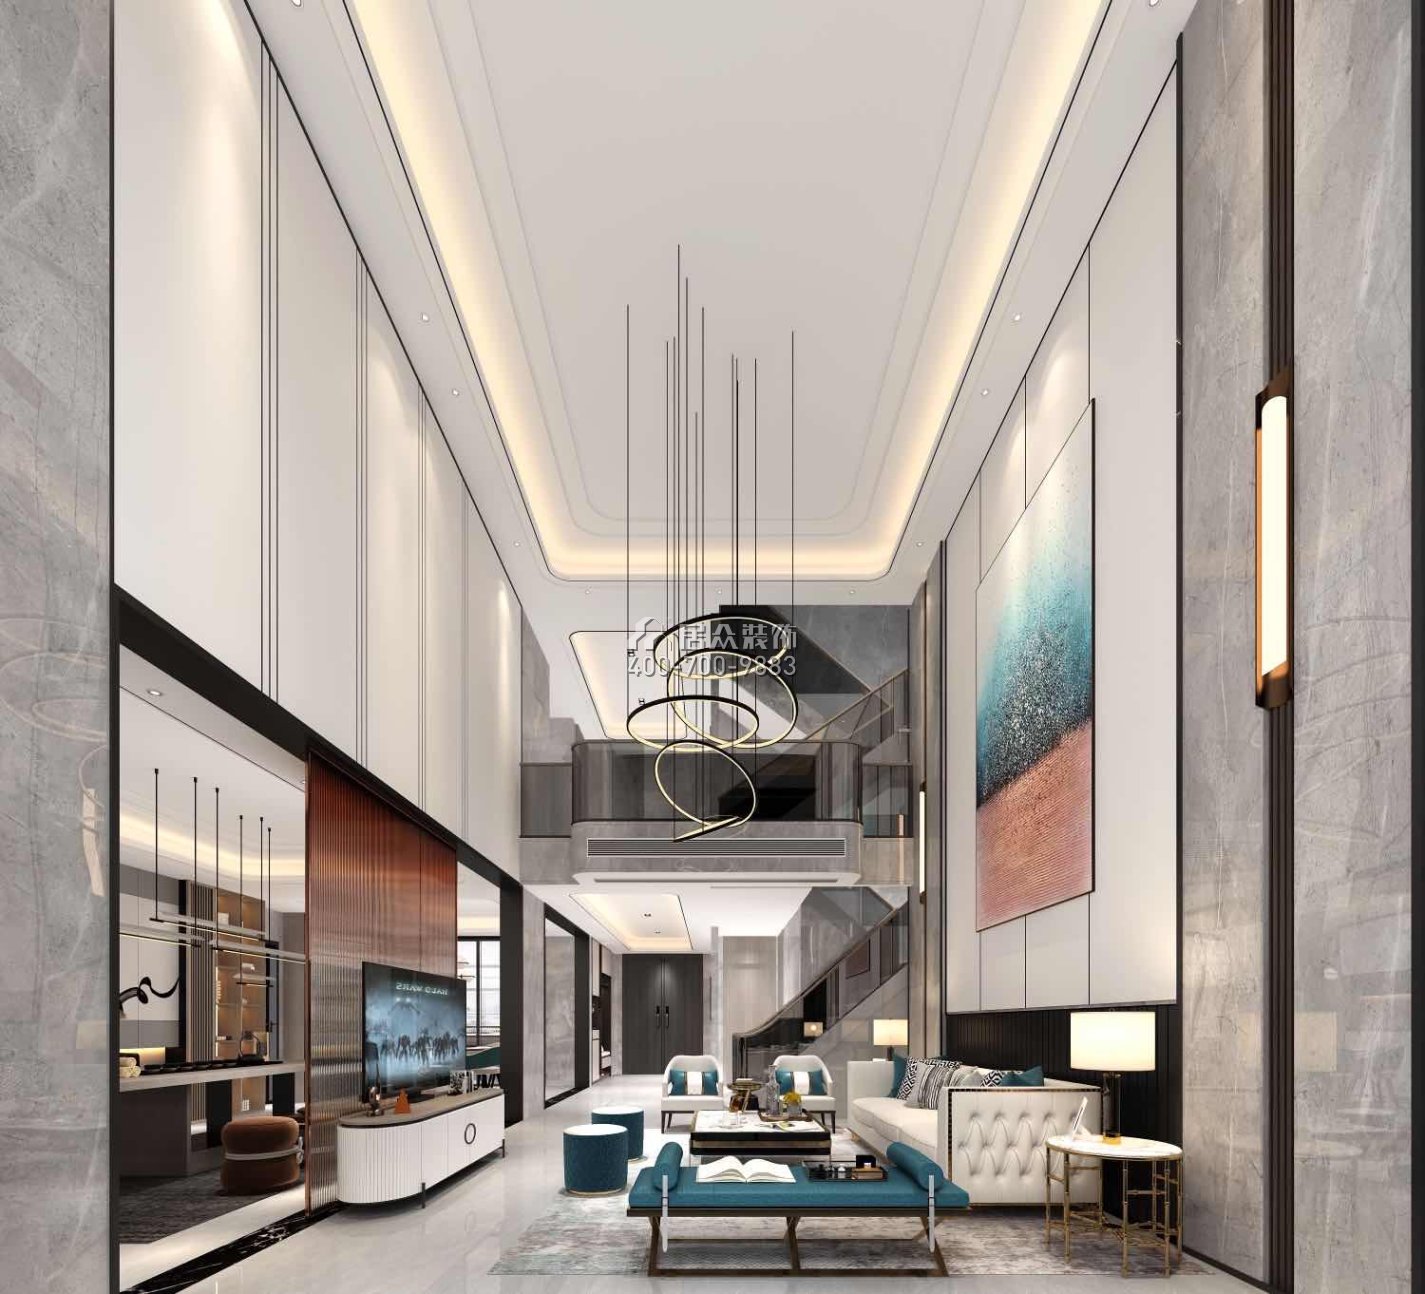 海逸豪庭321平方米現代簡約風格別墅戶型客廳裝修效果圖